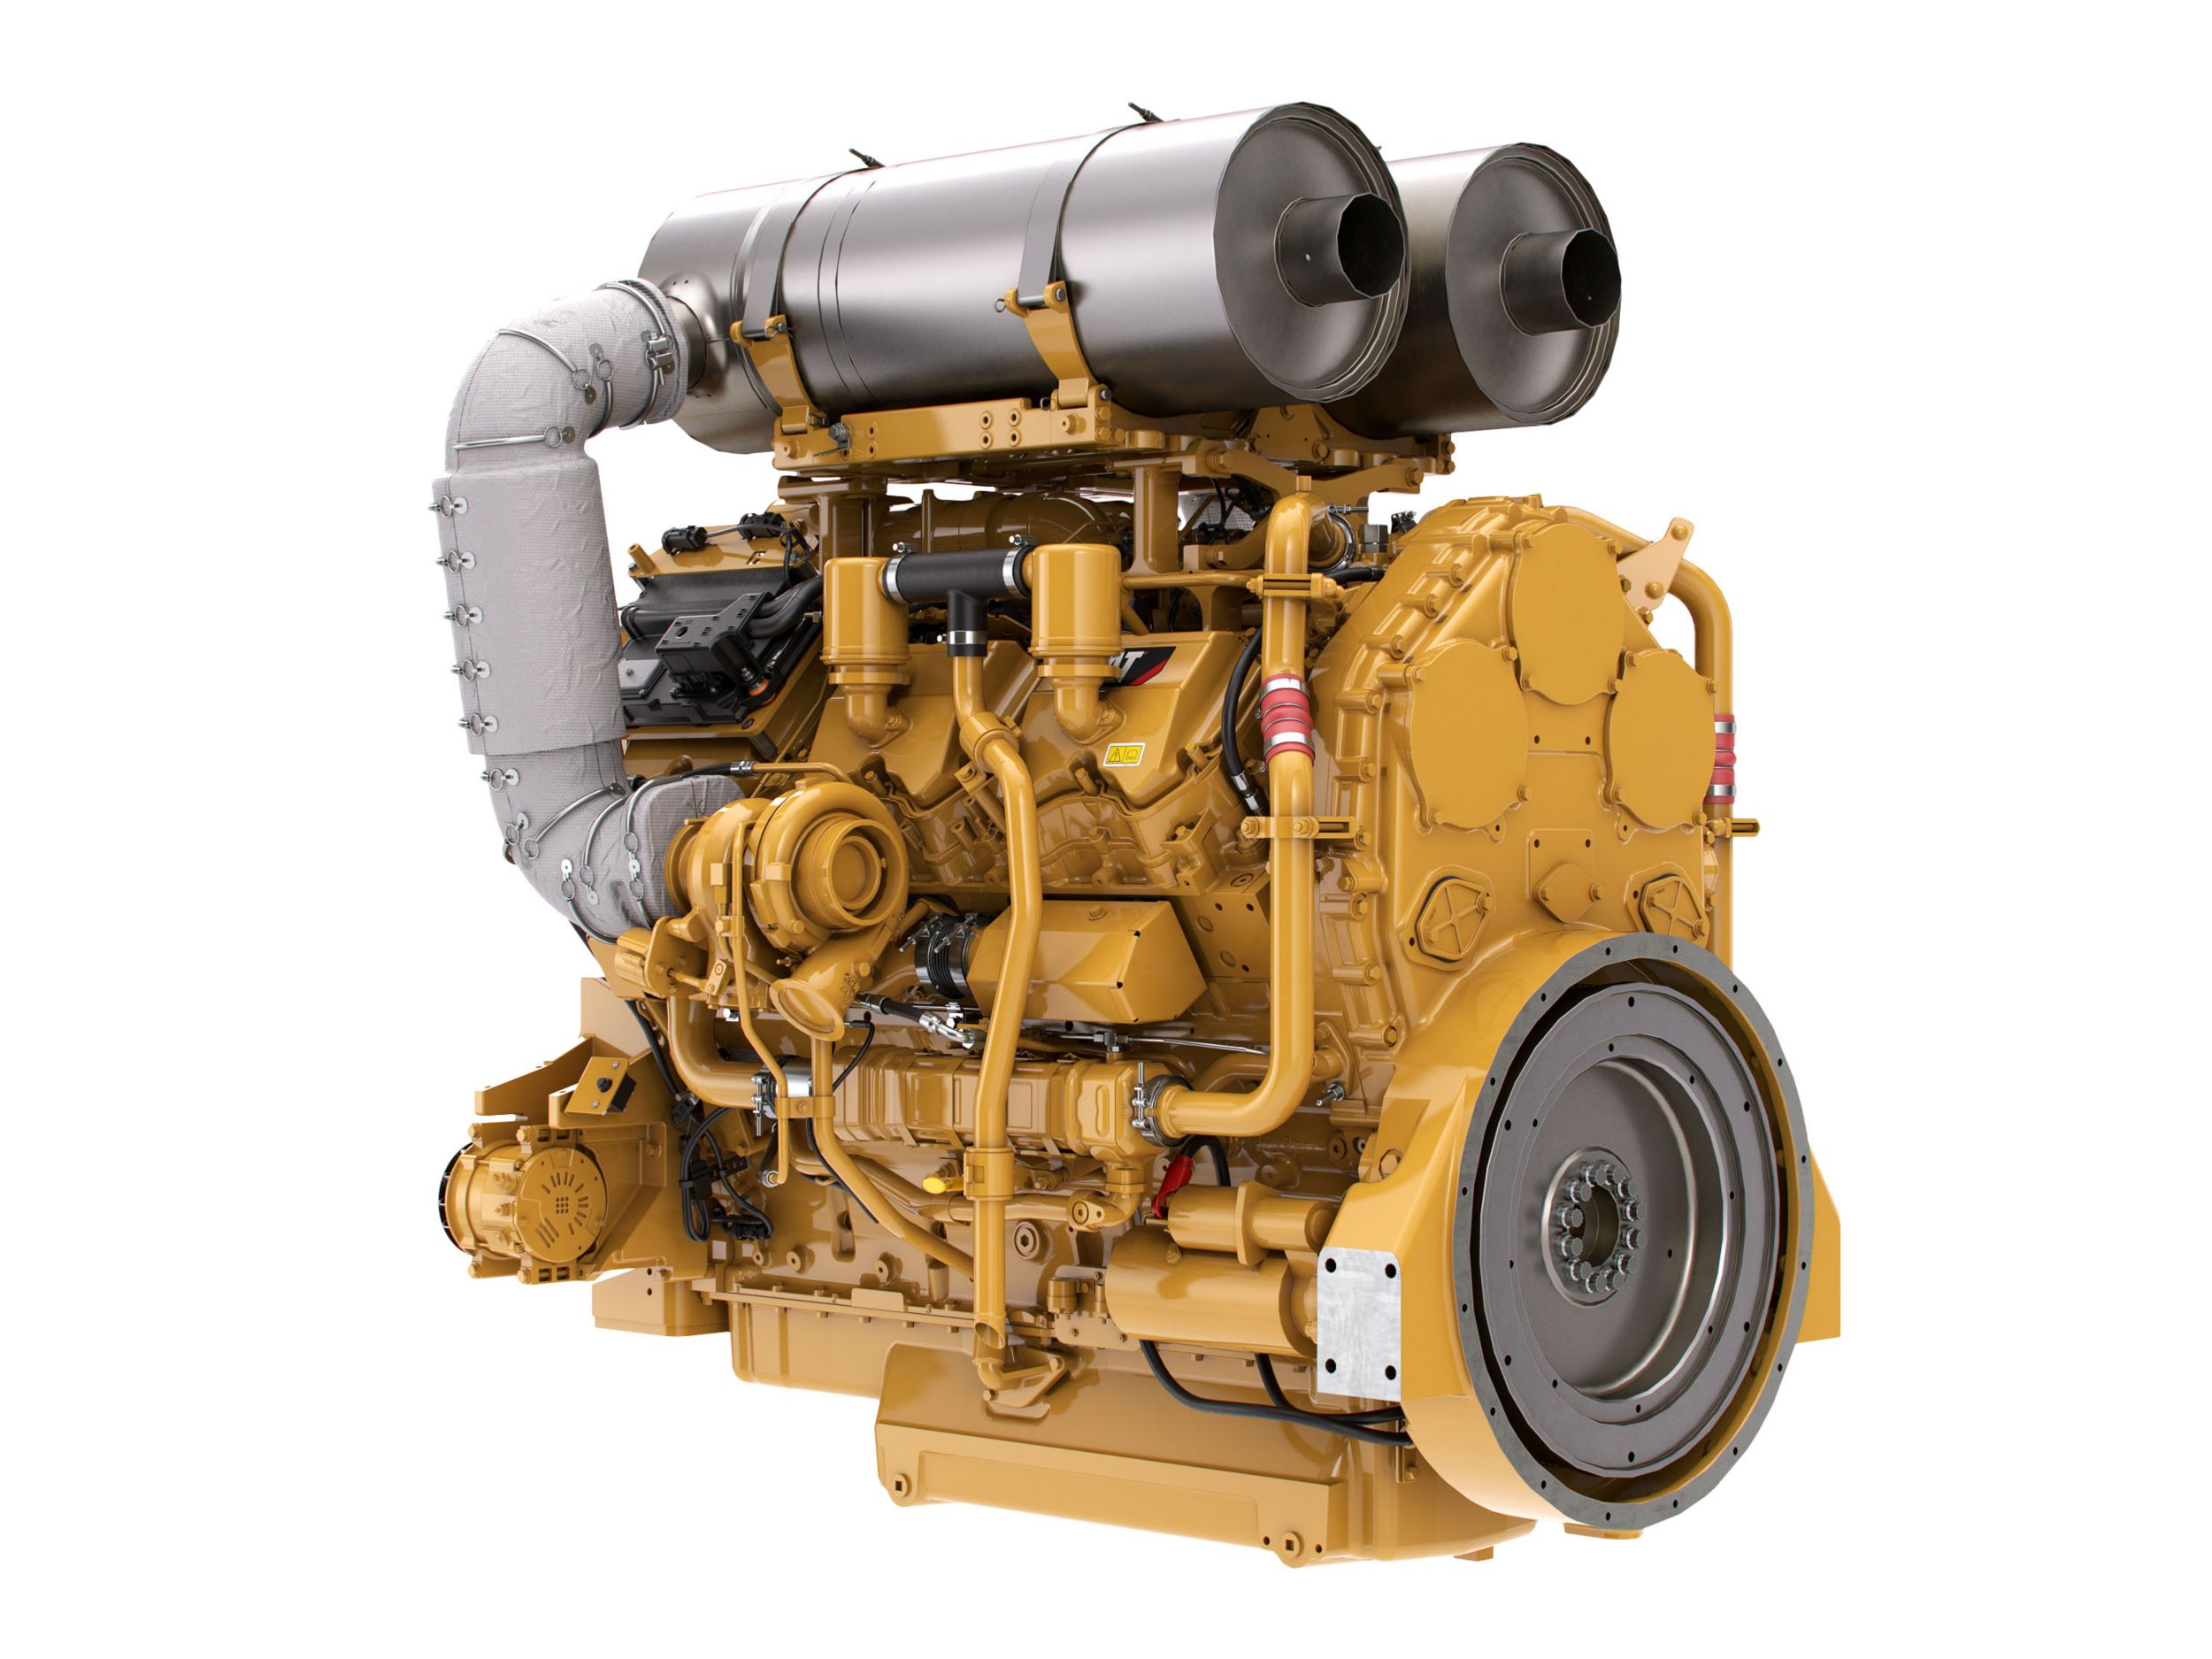 Motori diesel C27 Tier 4 - Aree altamente regolamentate